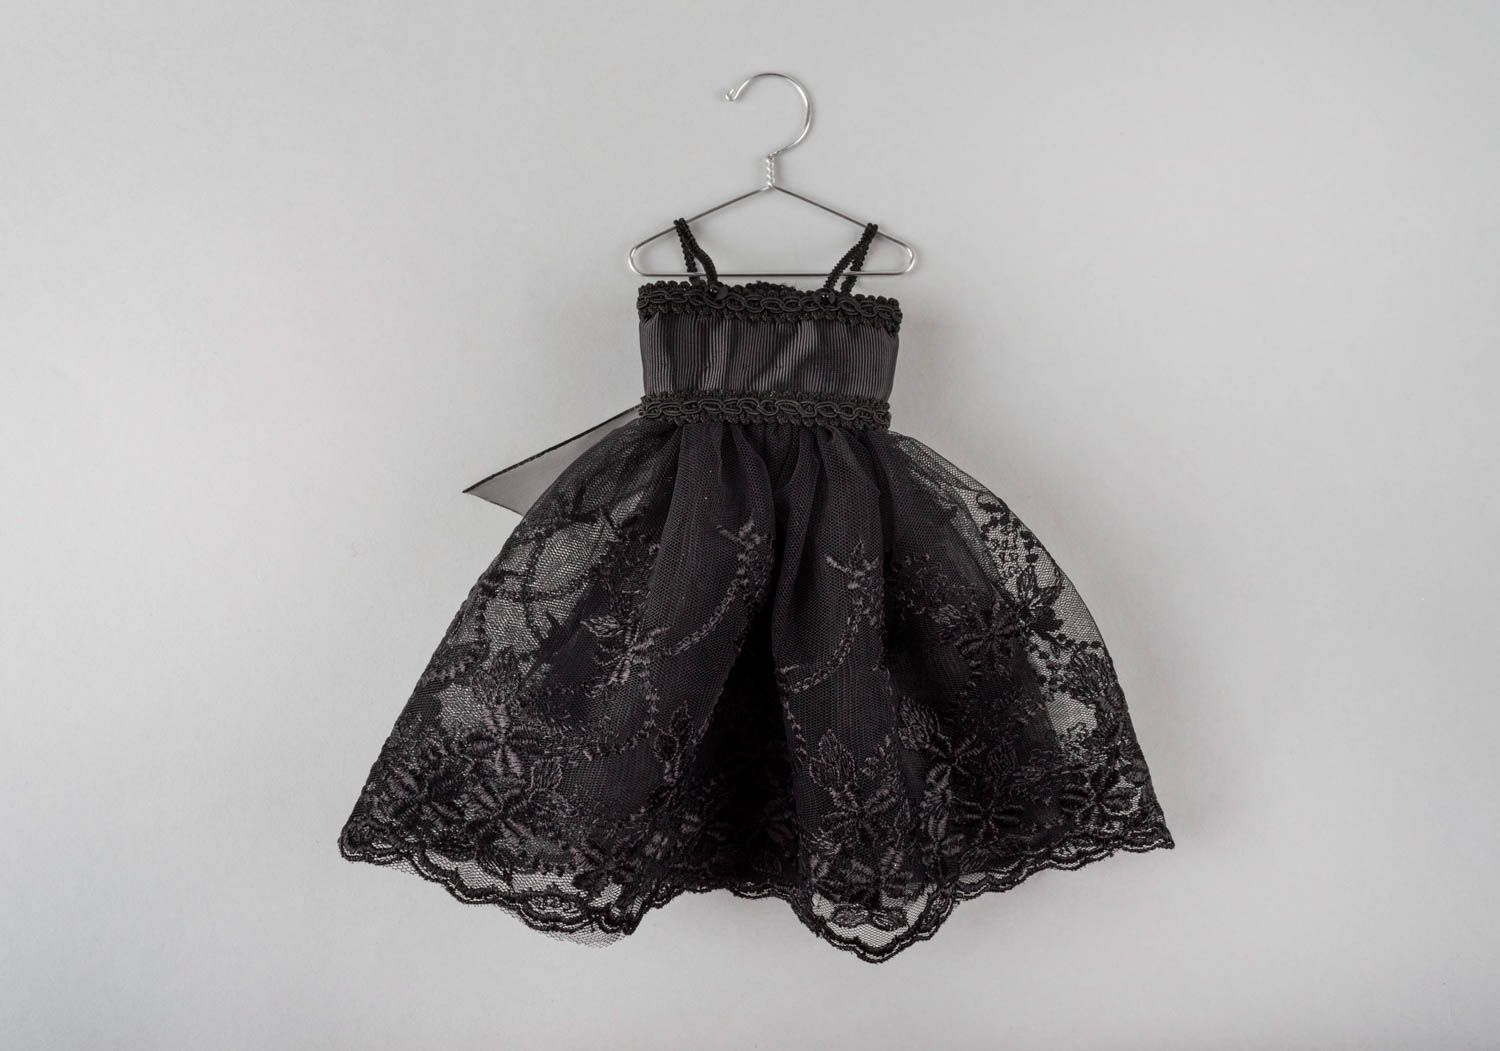 Интерьерная подвеска в виде платья ручной работы оригинальная из кружева фото 3